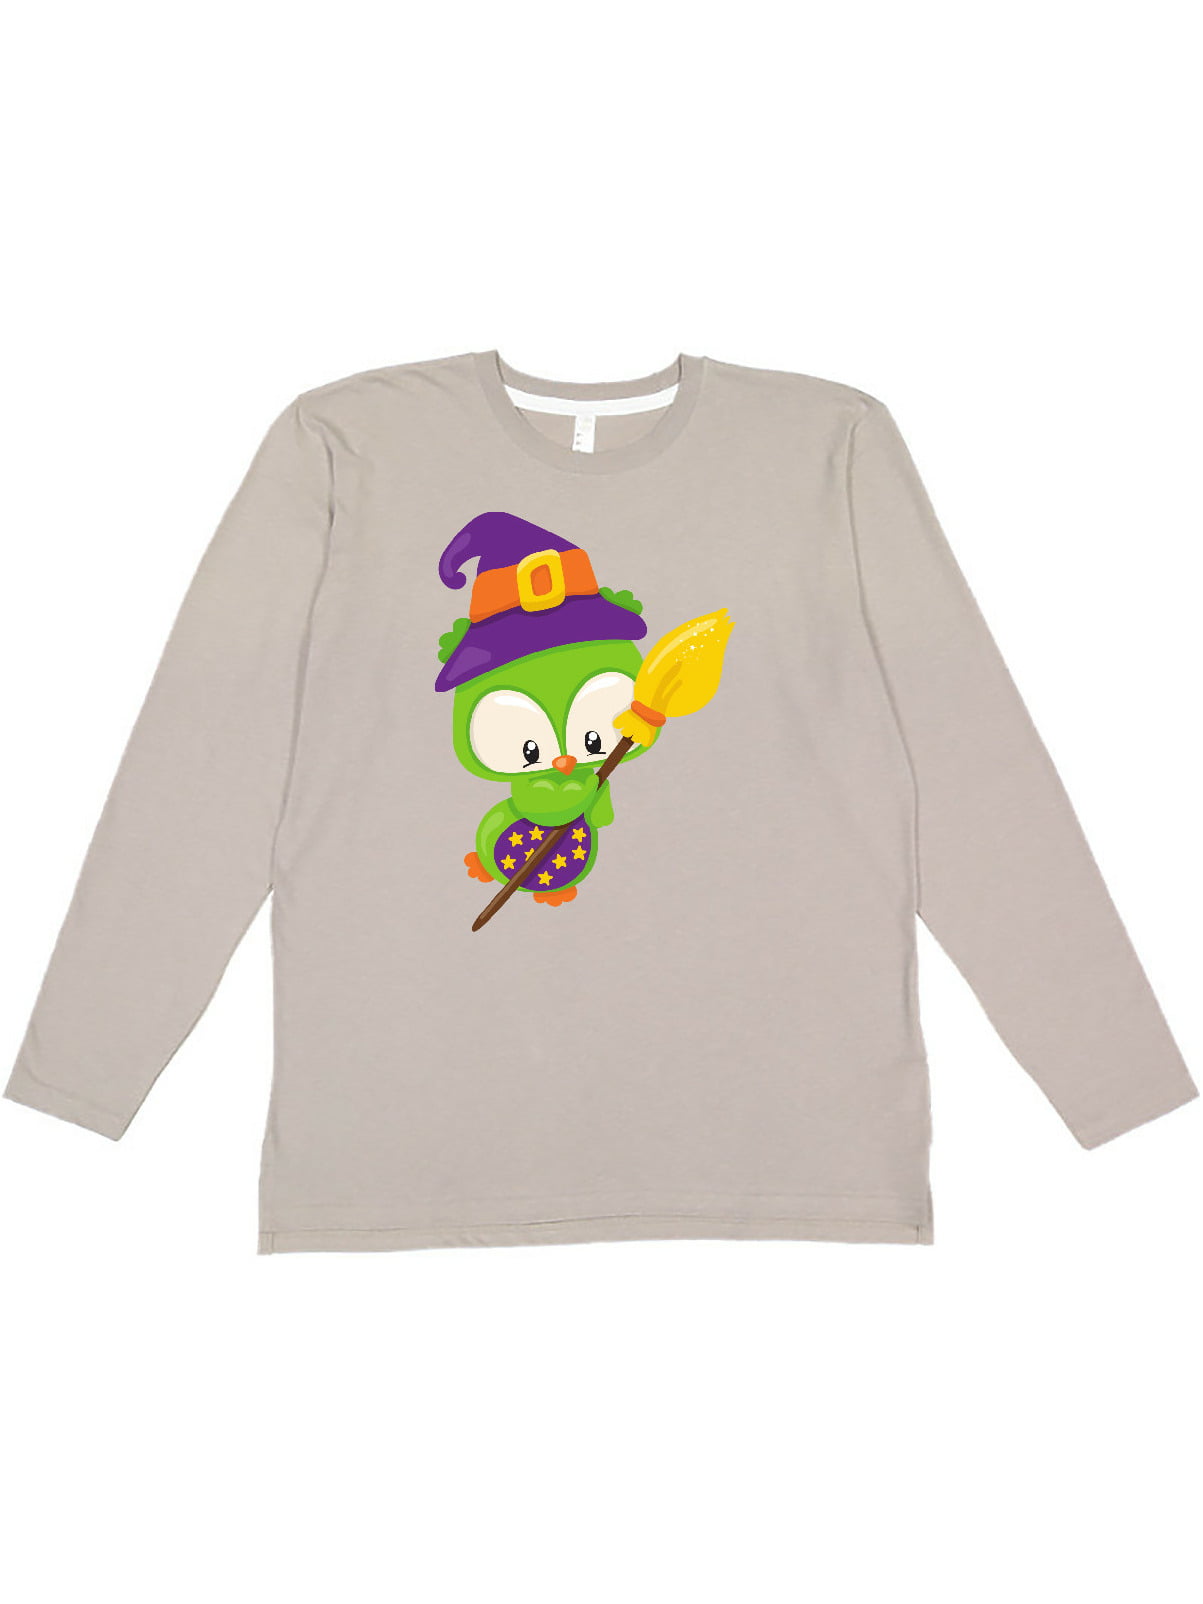 100% That Witch Halloween Tee Cute Halloween T-Shirt Halloween Quote 100 Percent That Witch Hat Broom Graphic Women's T-Shirt